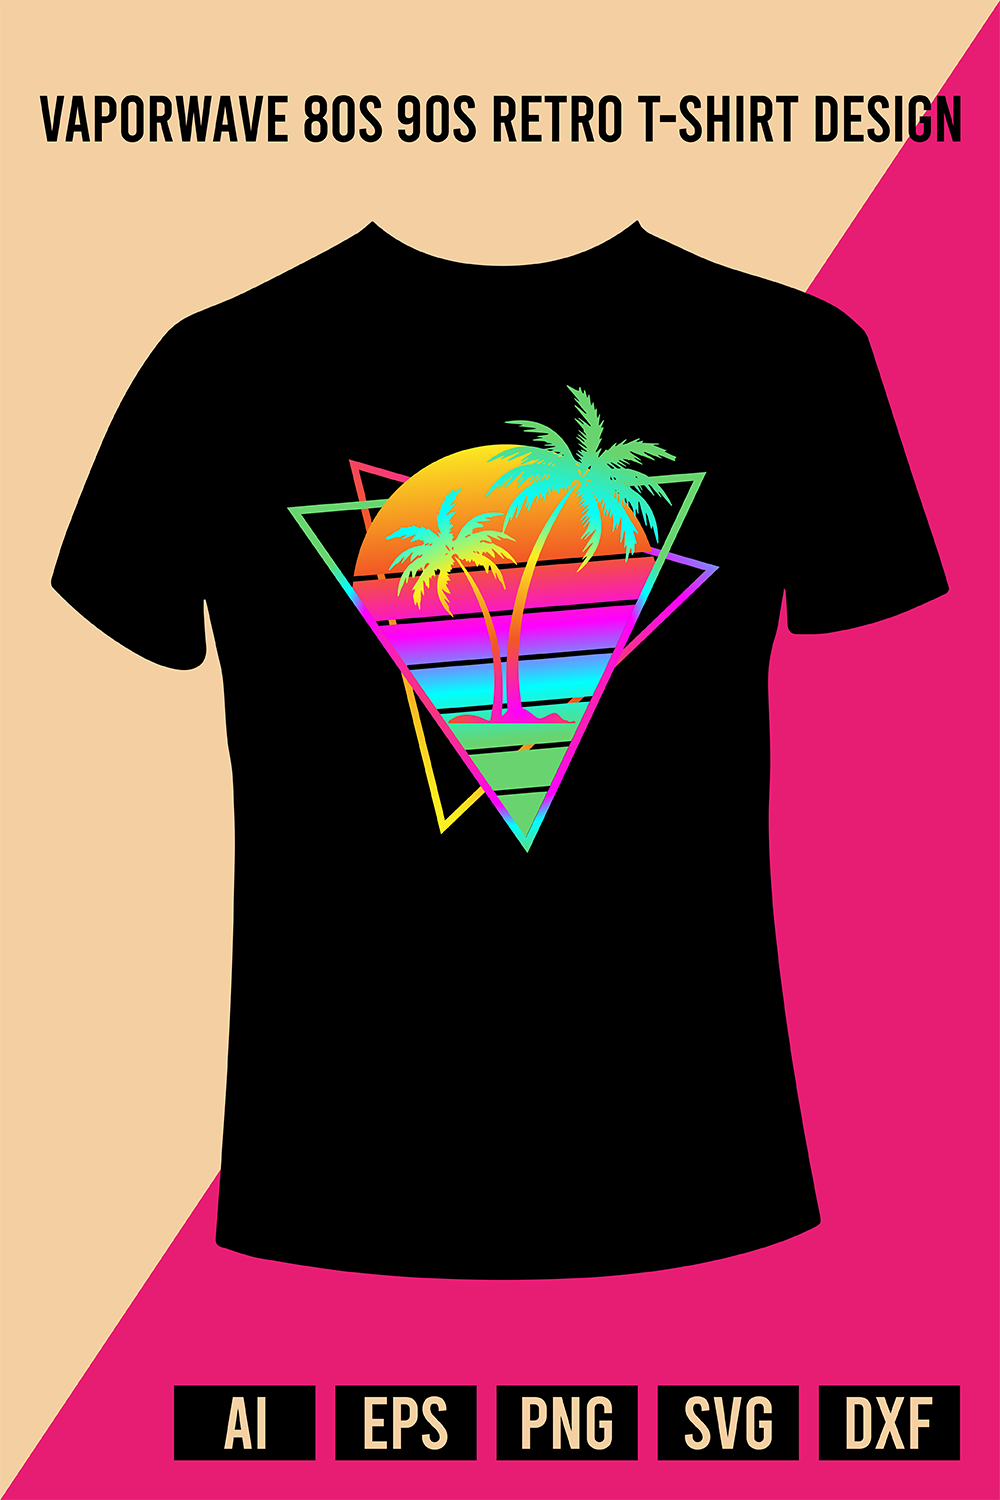 Vaporwave 80s 90s Retro T-Shirt Design pinterest preview image.